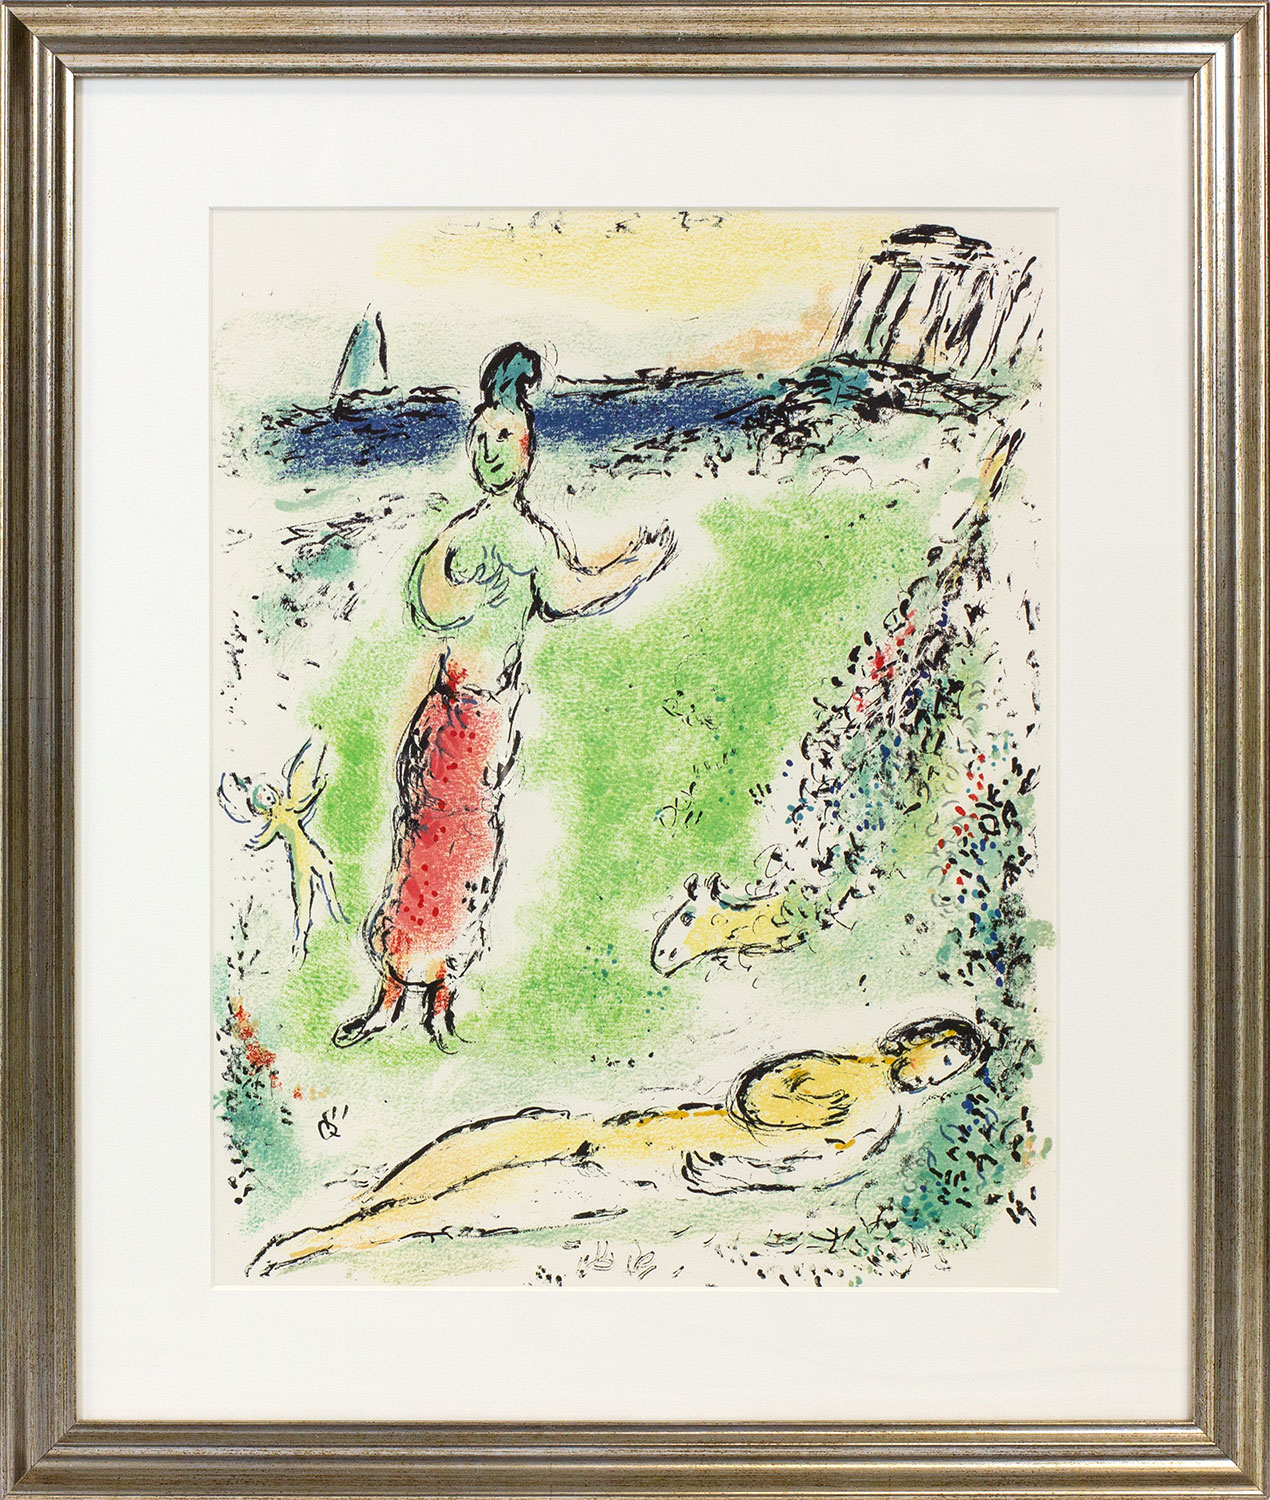 Bild "Die Odyssee - Athene senkt Odysseus in den Schlaf" (1989), gerahmt von Marc Chagall